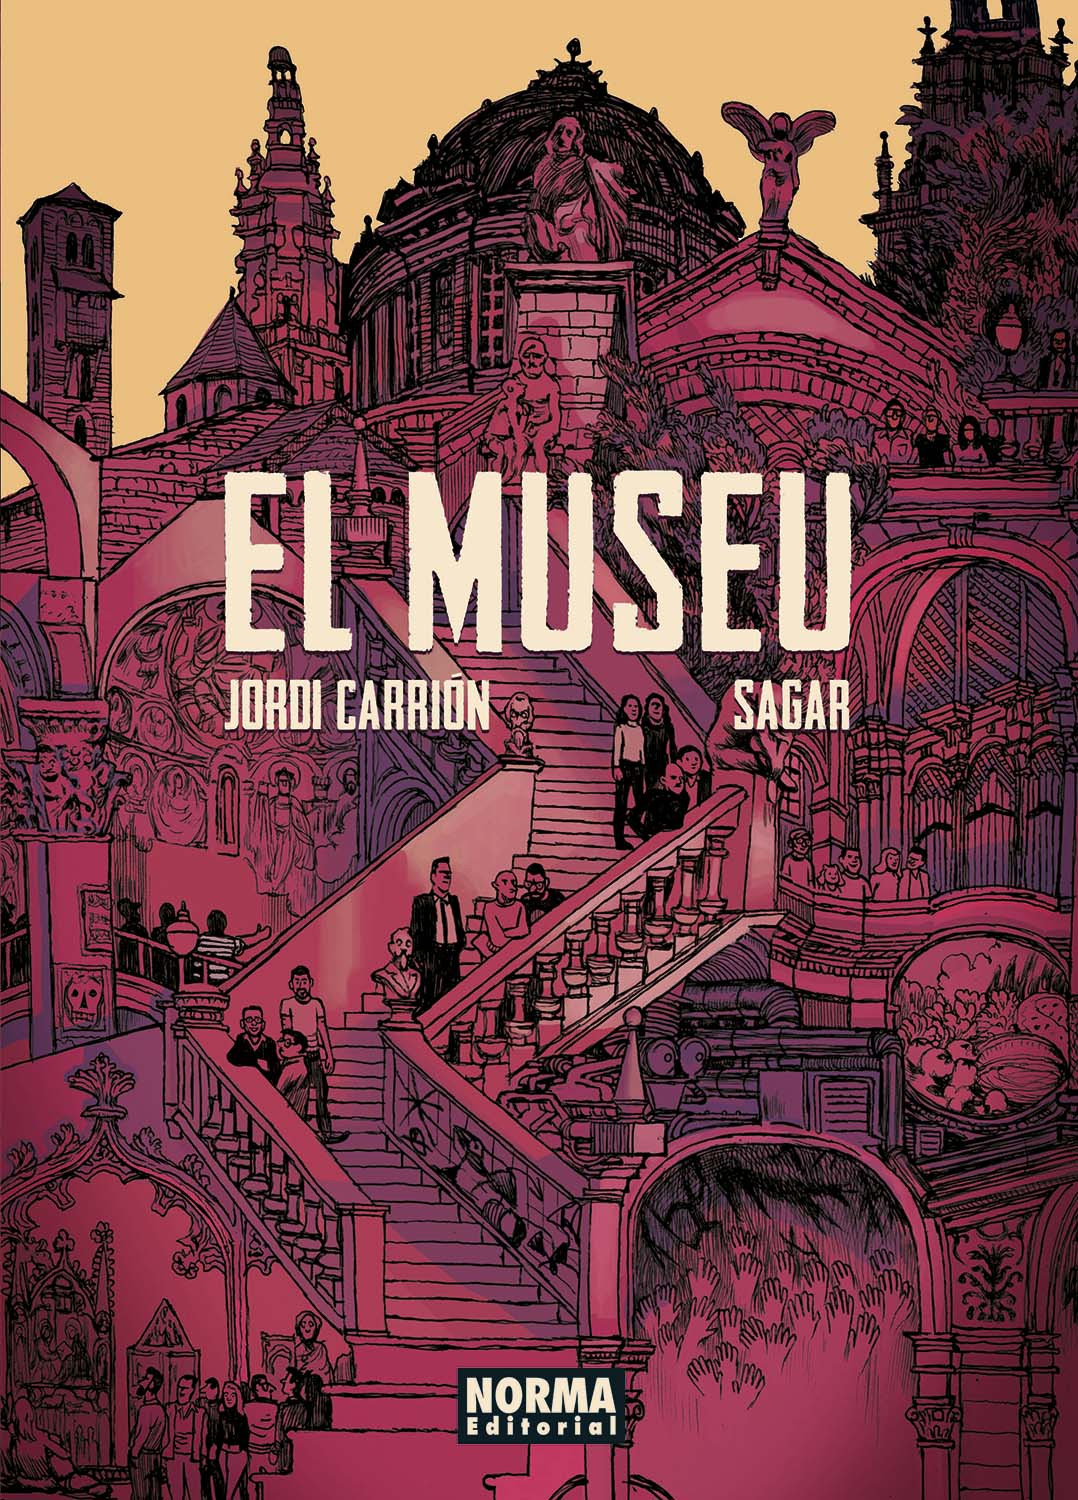 Portada de la novela gráfica 'El Museo', de Jorge Carrión y Sagar